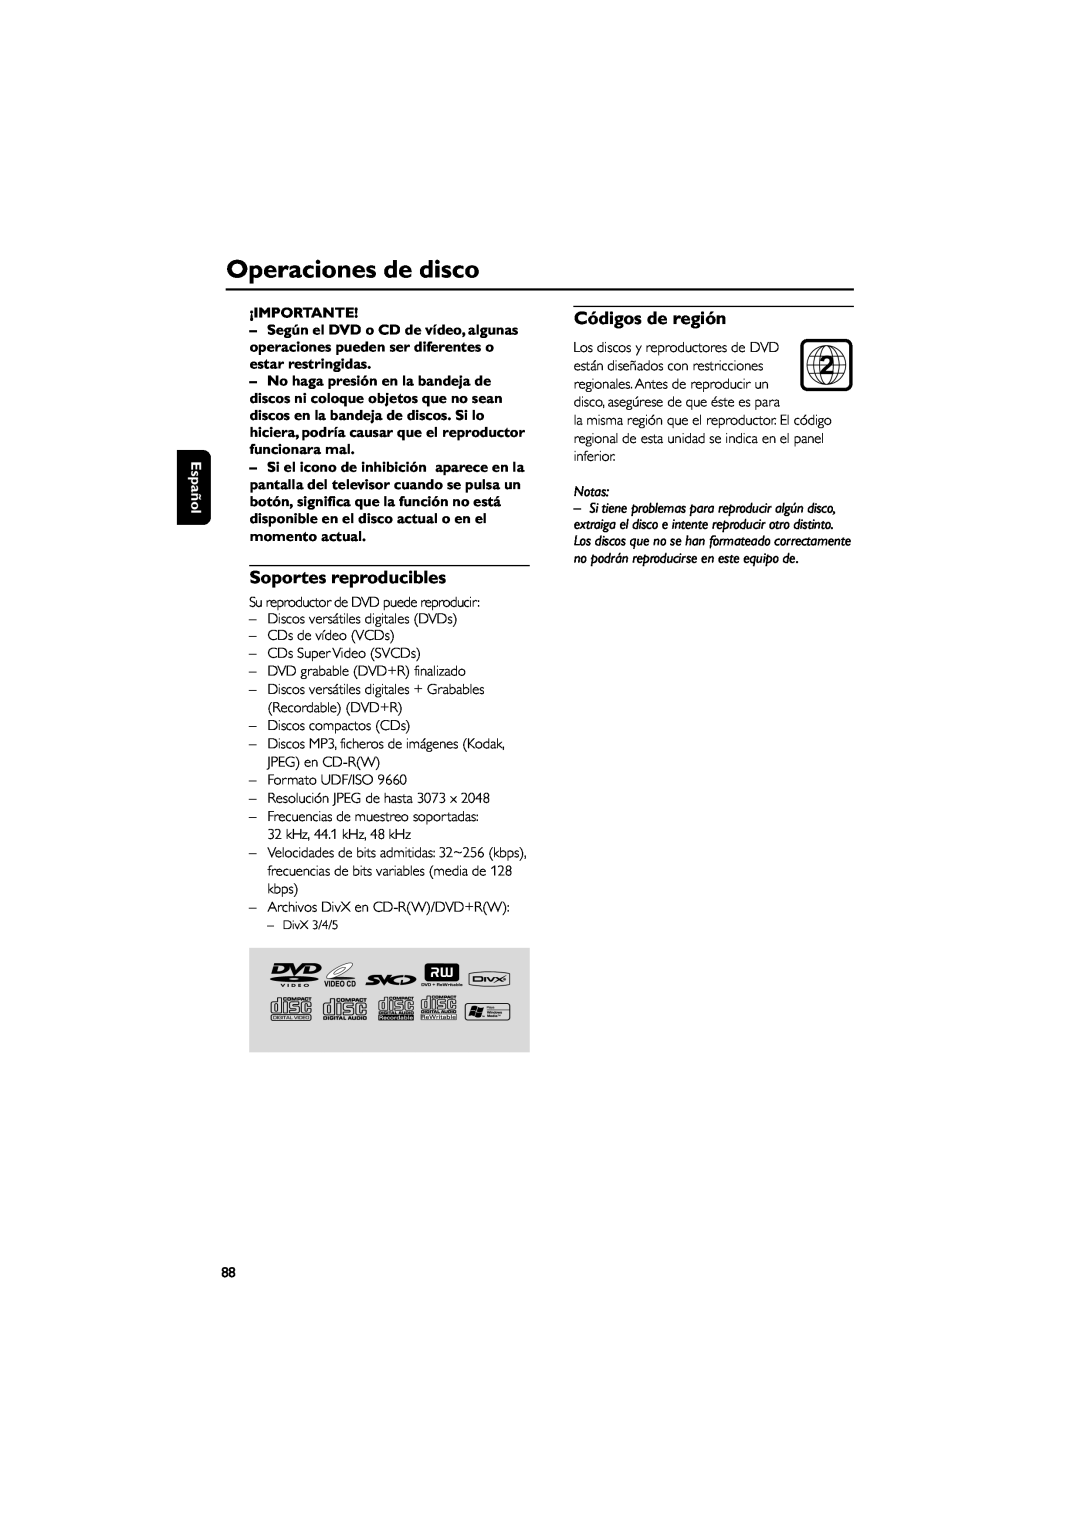 Philips MCD139B user manual Operaciones de disco, Códigos de región, Soportes reproducibles, Español, ¡Importante, Notas 